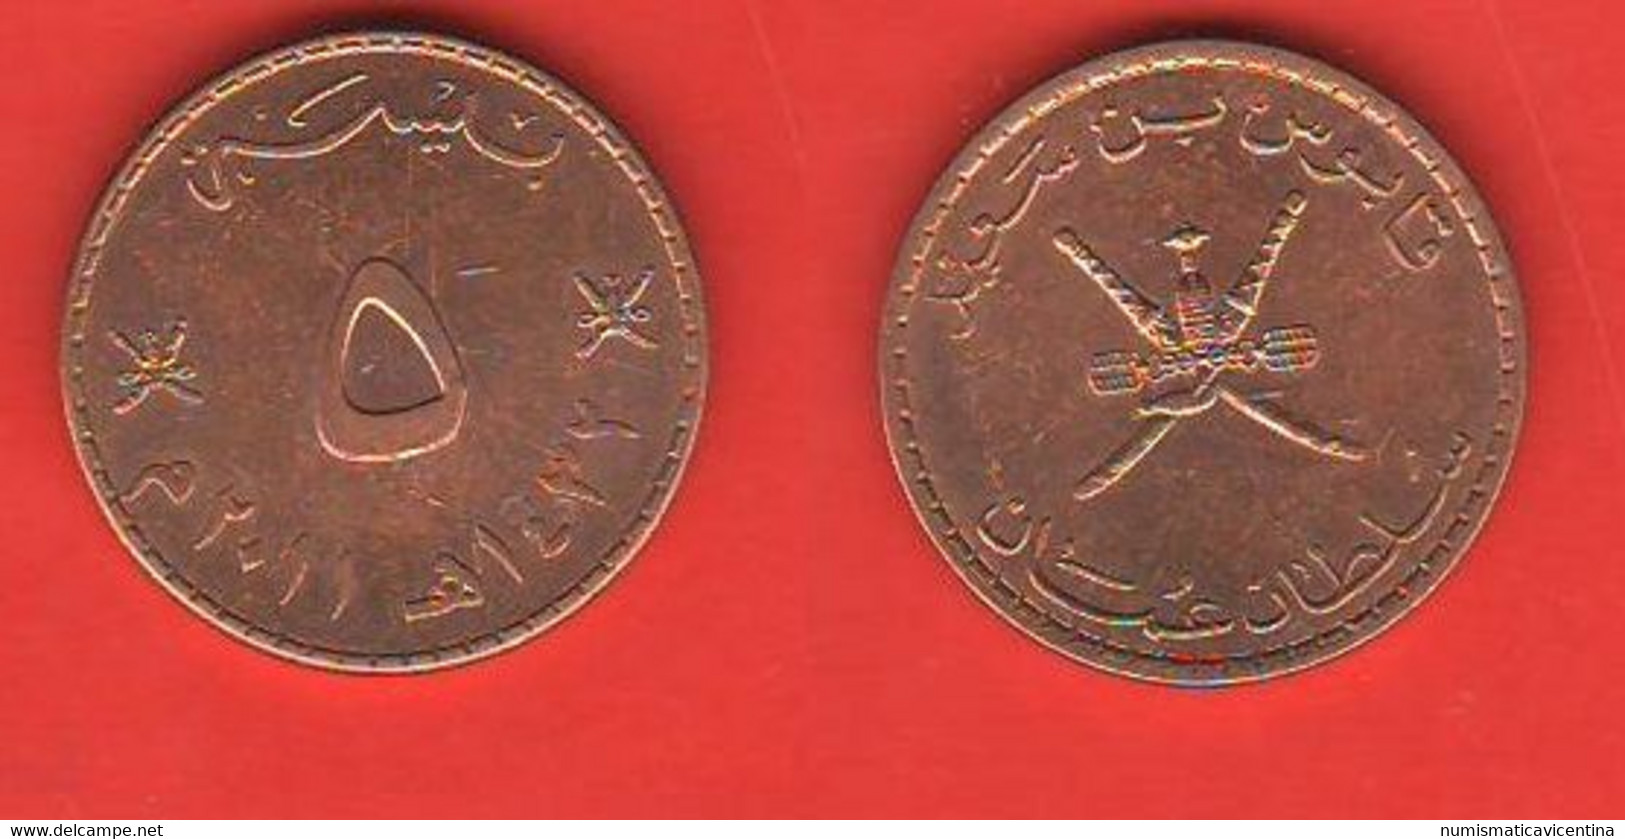 Oman 5 Baiza 2011 AH 1432 Bronze Coin - Maldives